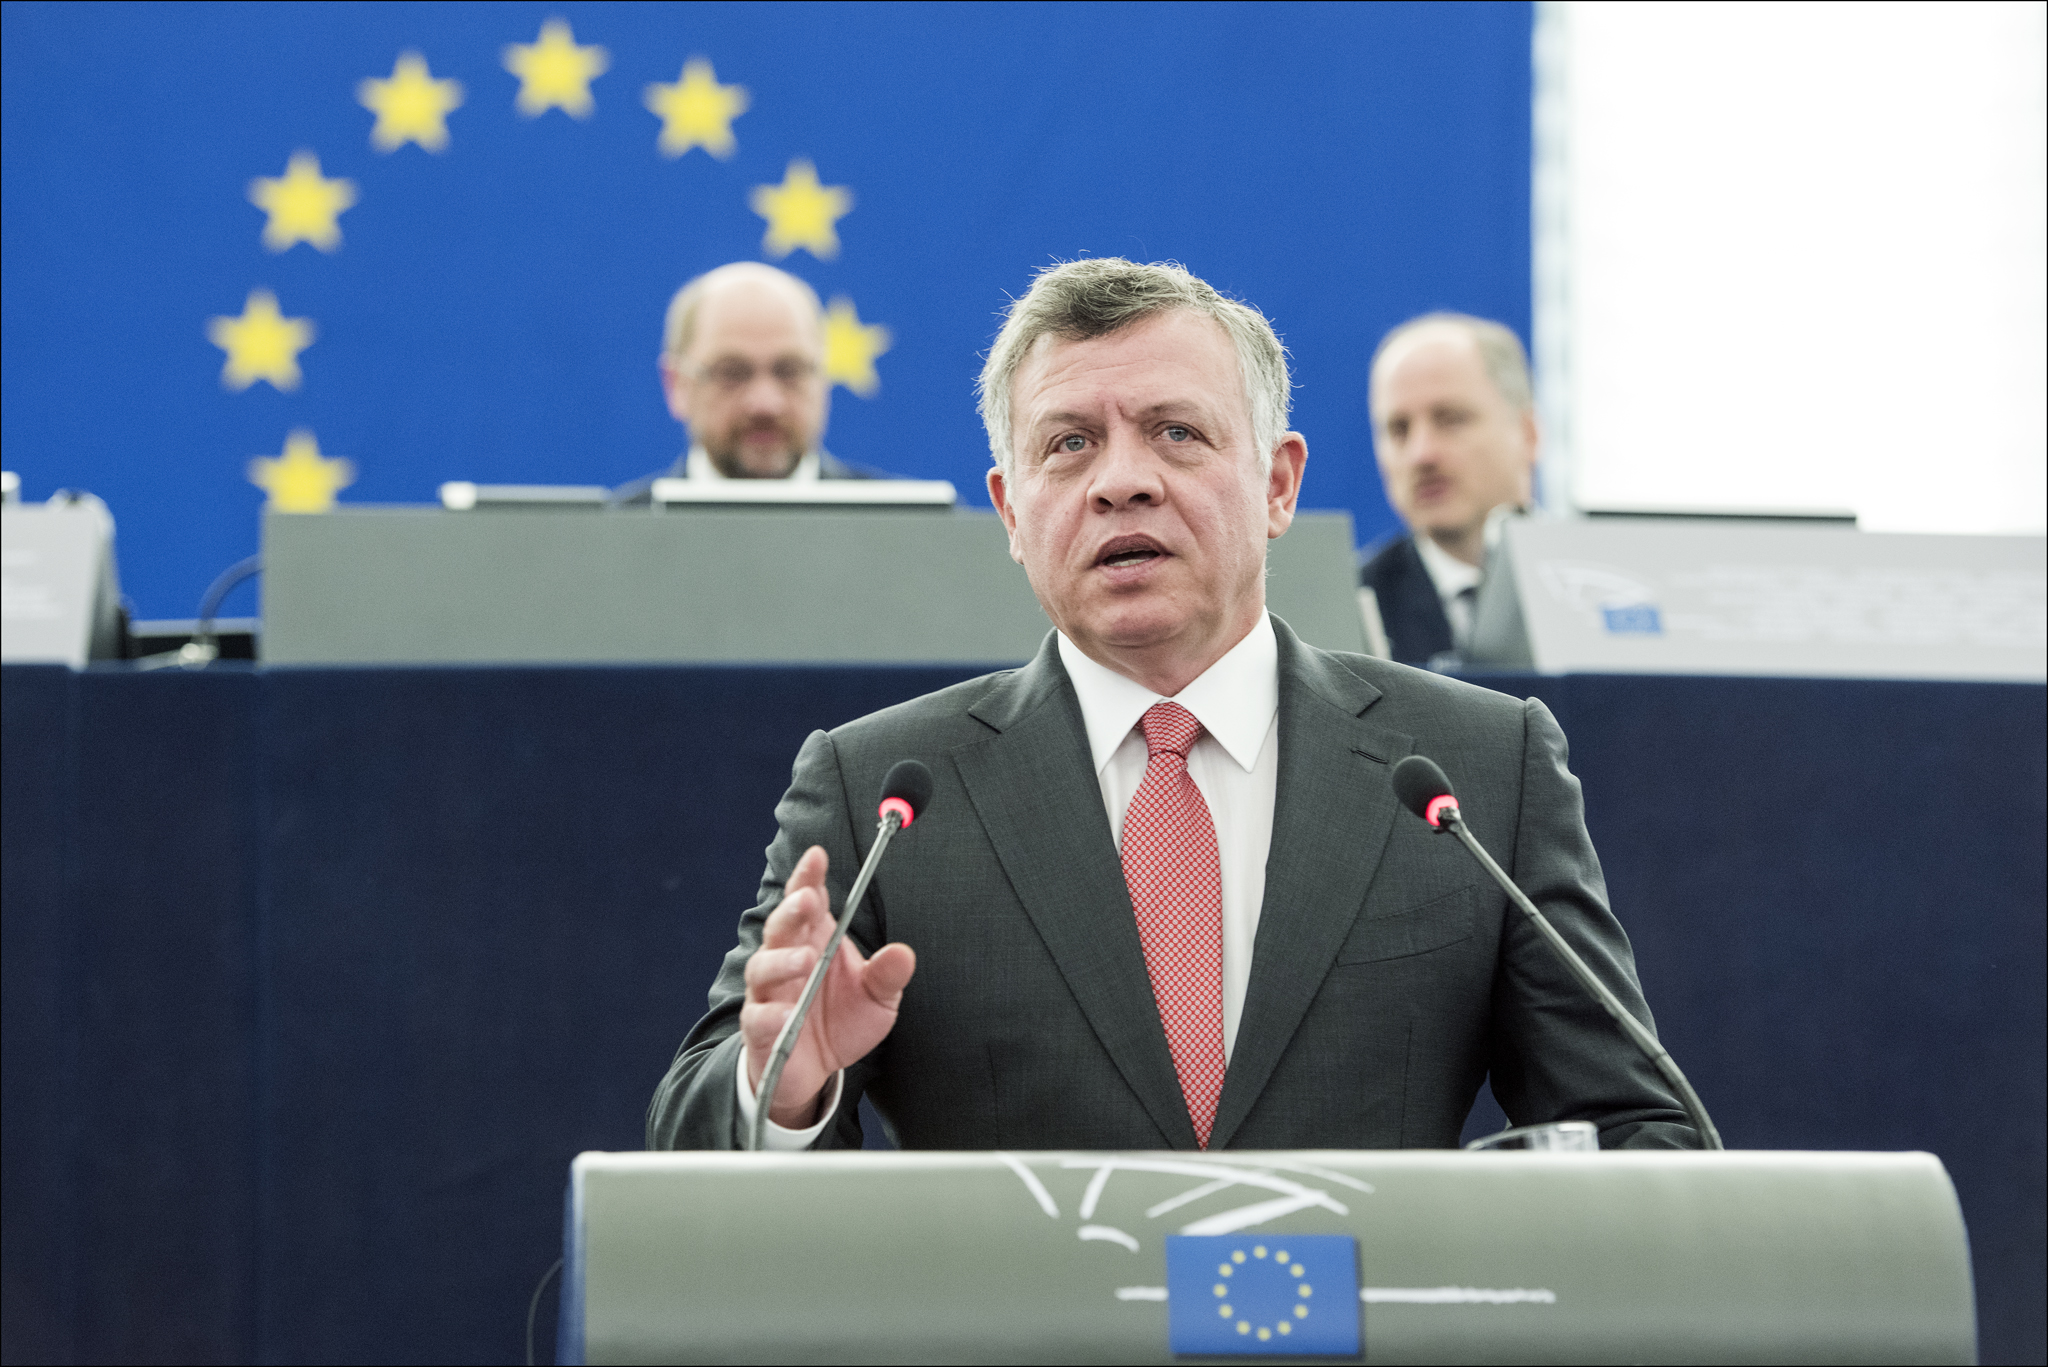 King Abdullah II of Jordan (photo credit: European Parliament/flickr)